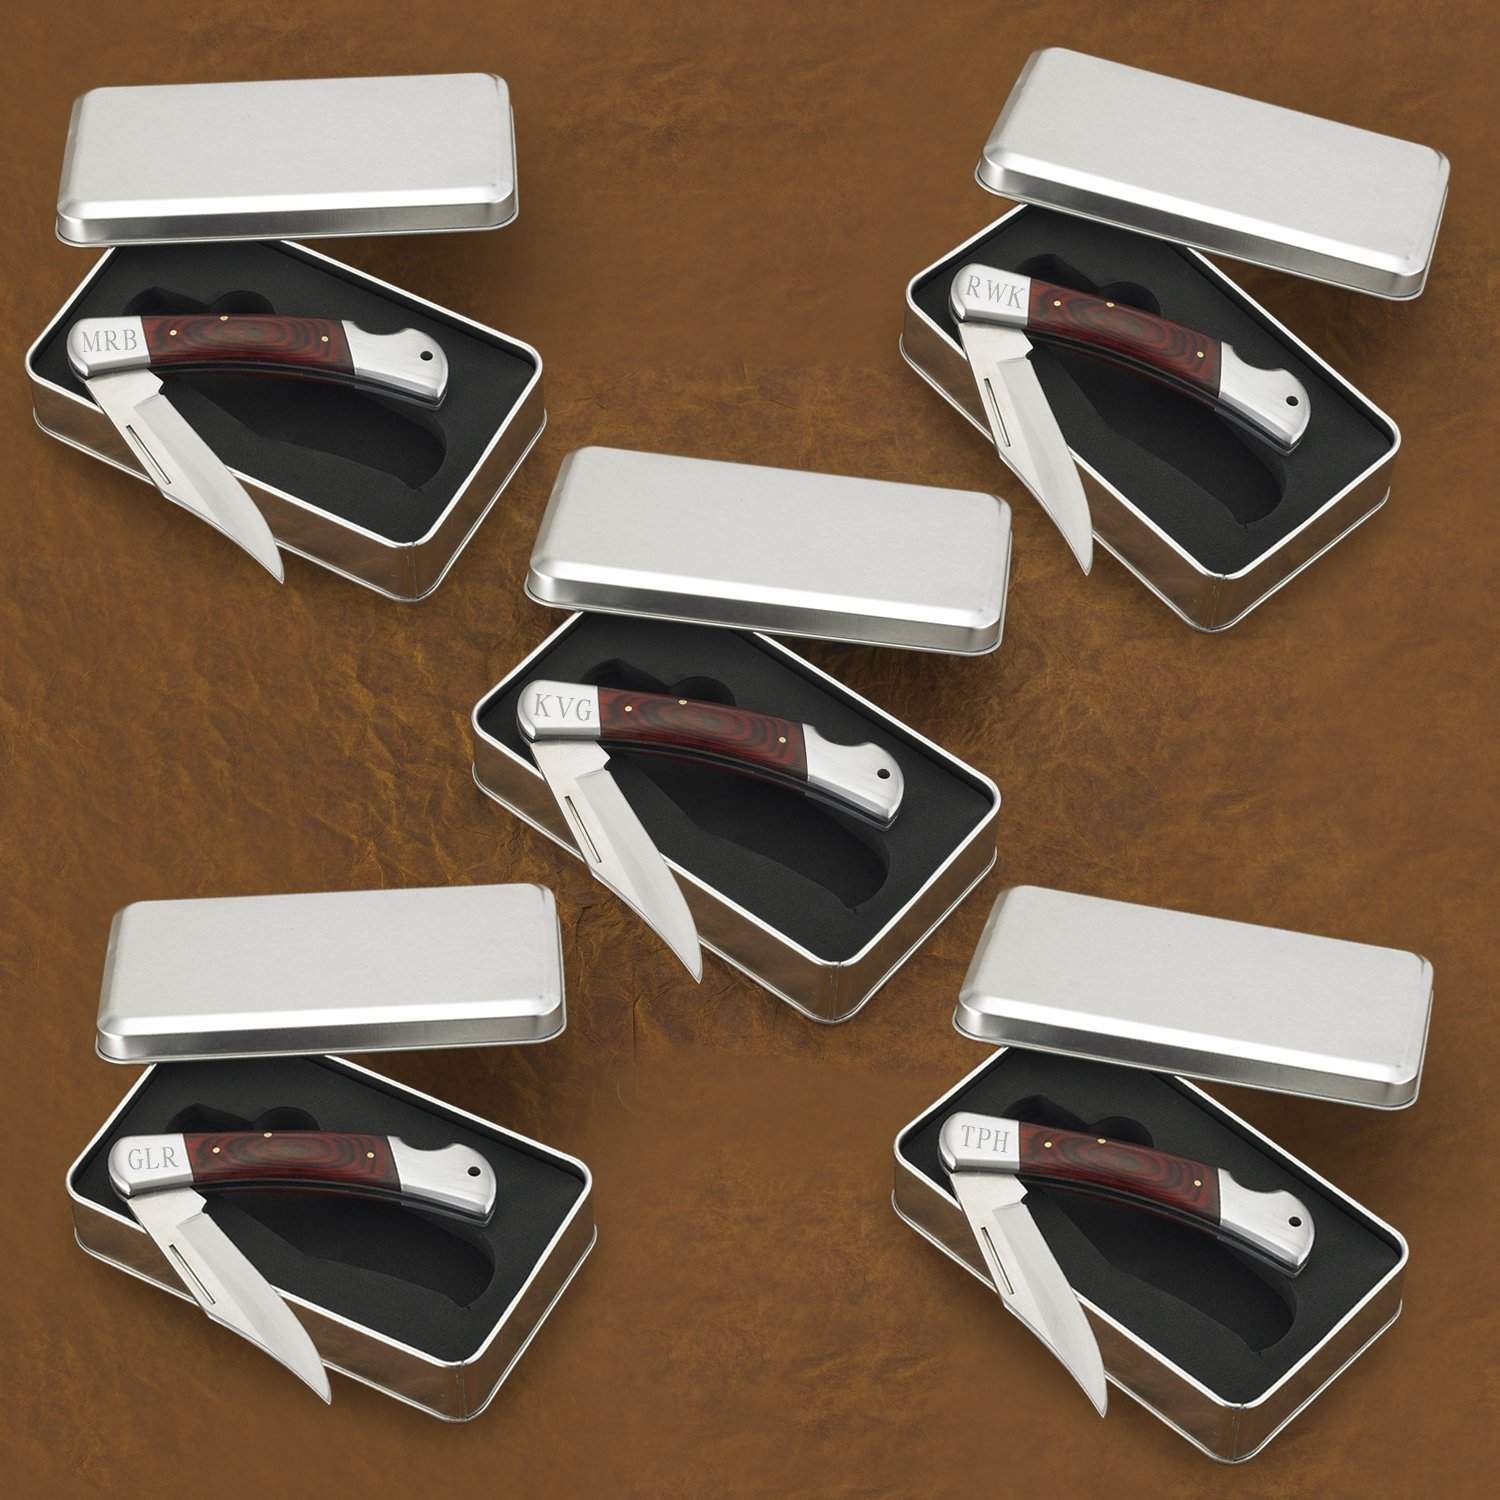 Set of 5 Personalized Engraved Hard-Wood Handle Locking Pocket Knife